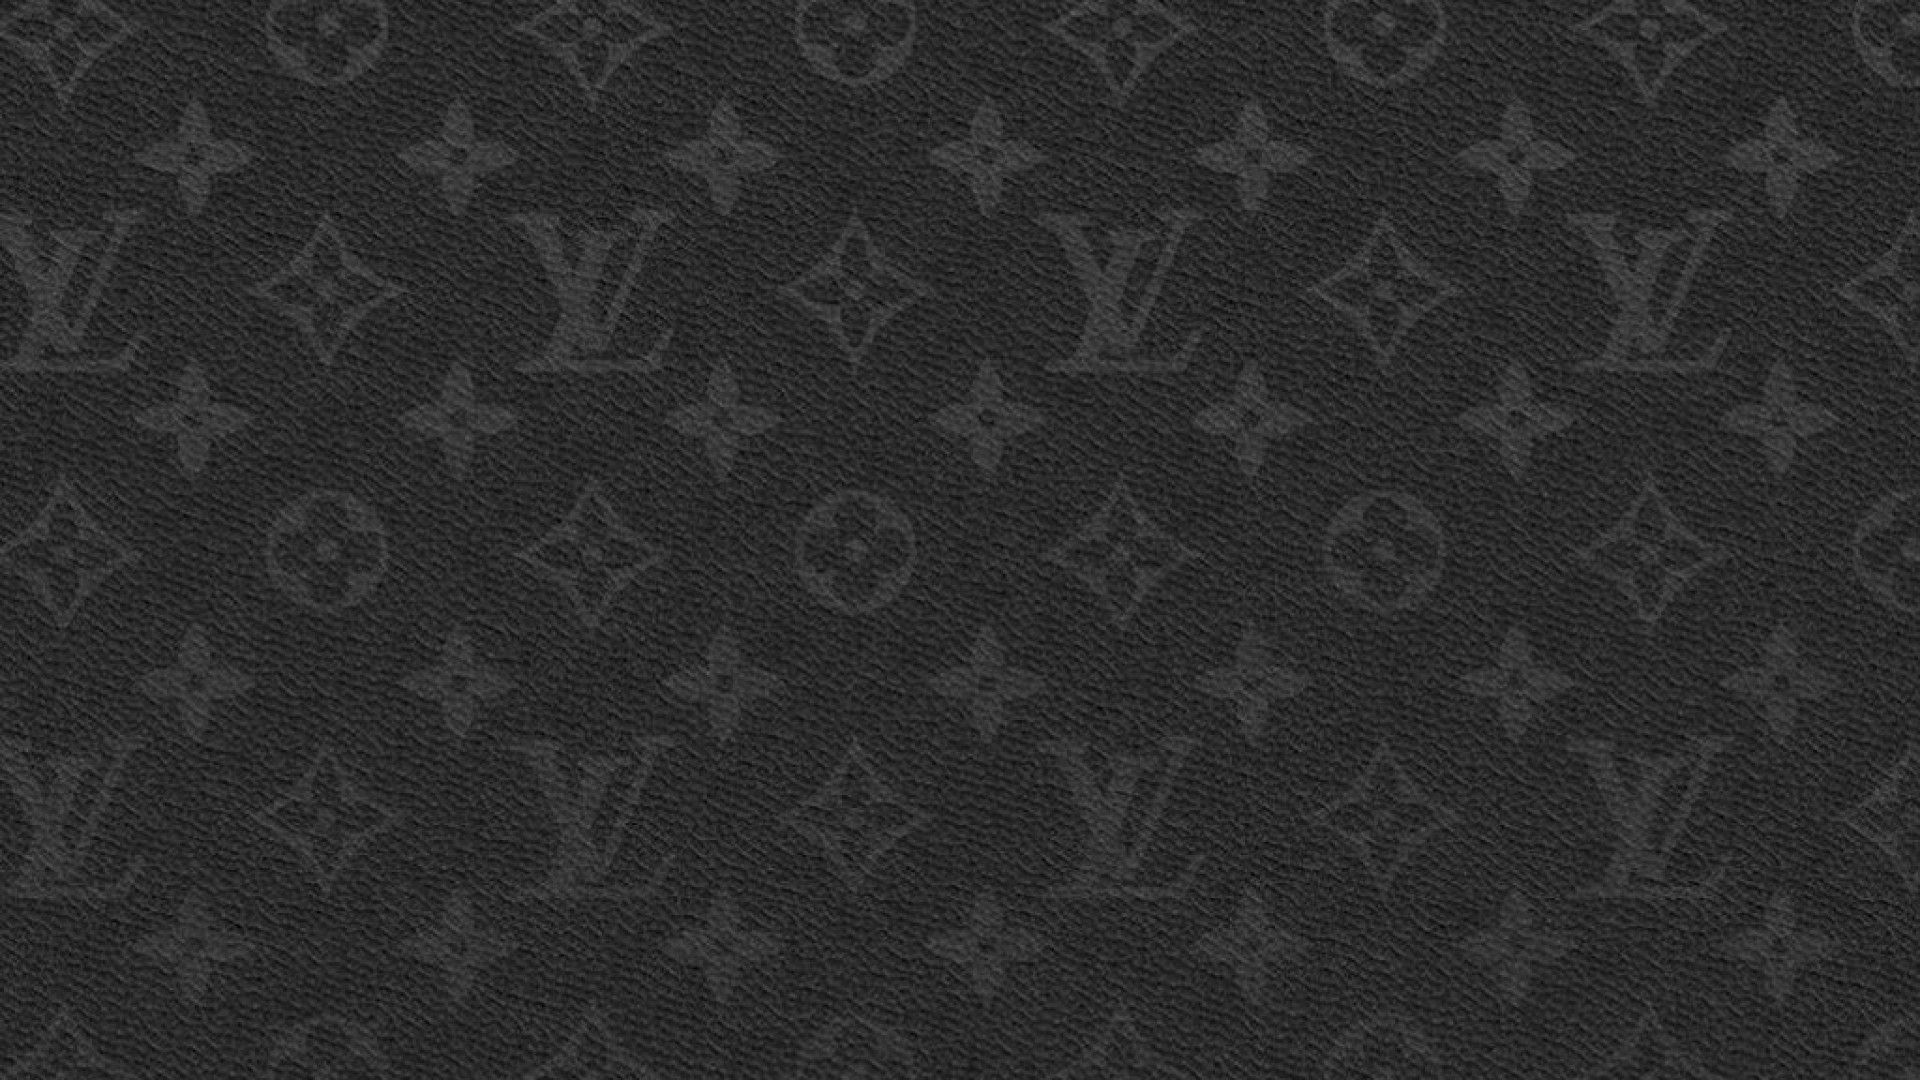 Louis Vuitton 1  Apple wallpaper, Fashion wallpaper, Louis